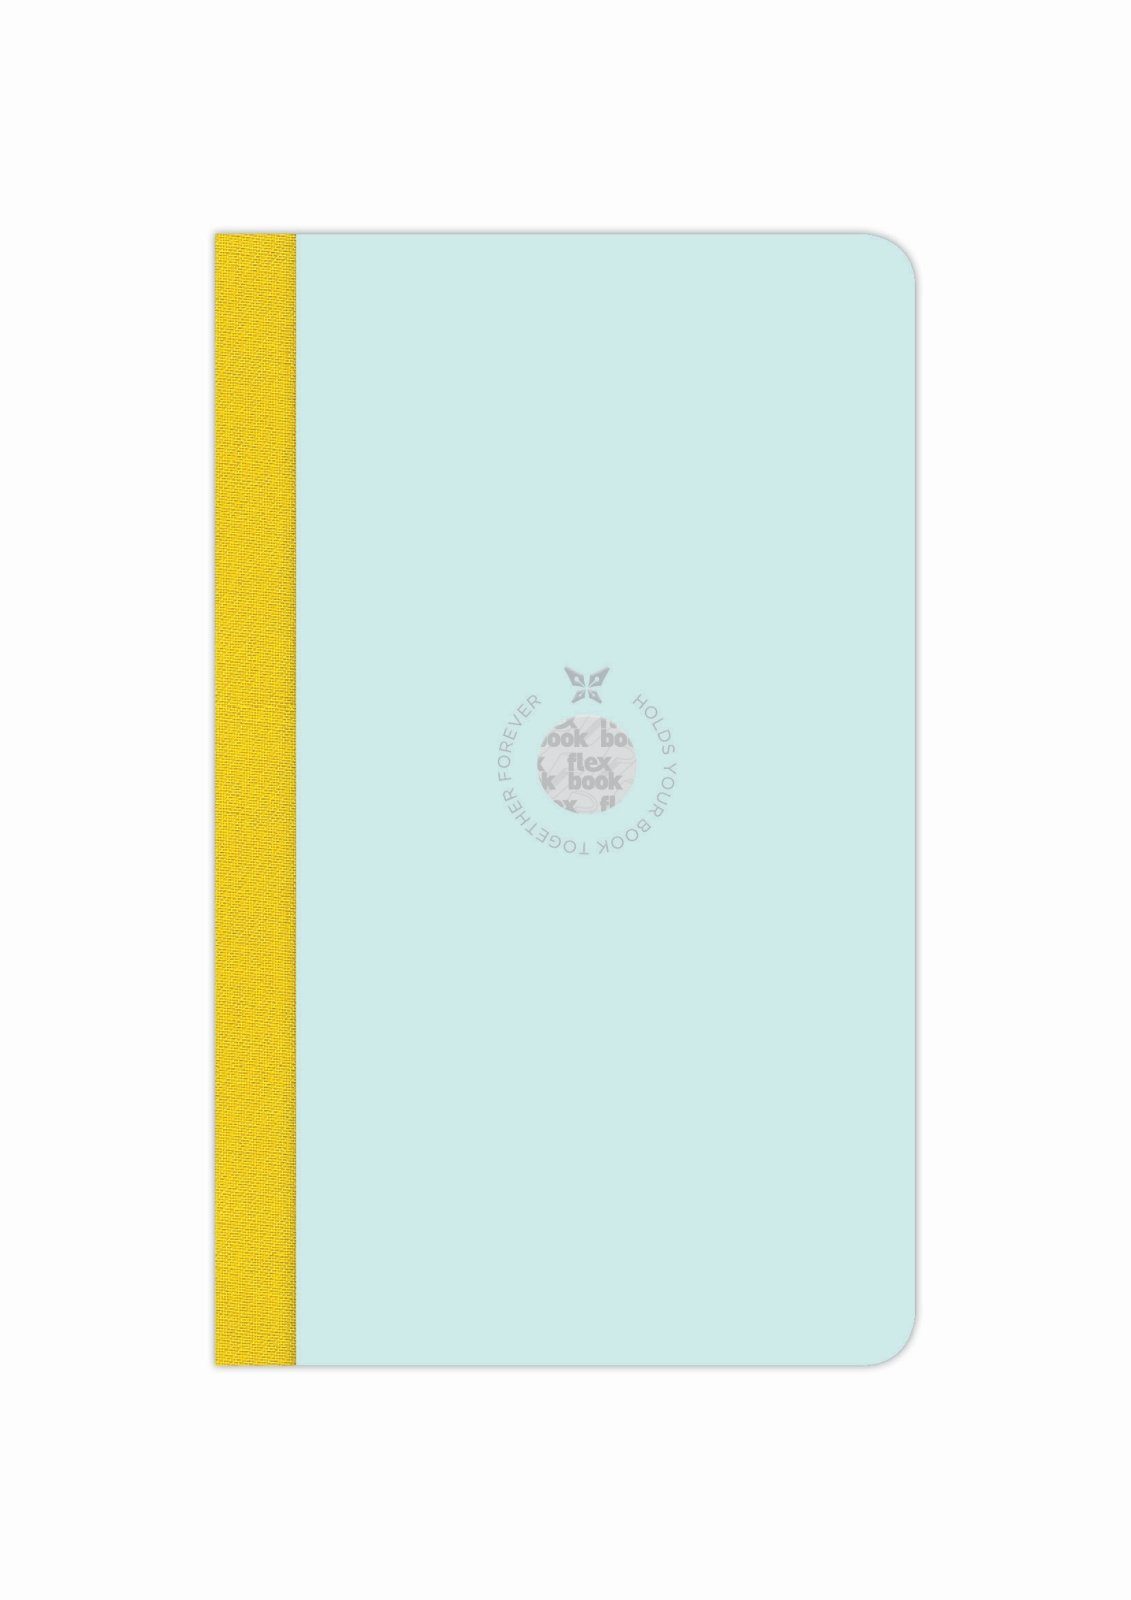 Flexbook Notizbuch Flexbook Smartbook Liniert 160 Seiten Ökopapiereinband viele Größen/Fa Hellblau-grün 13*21cm